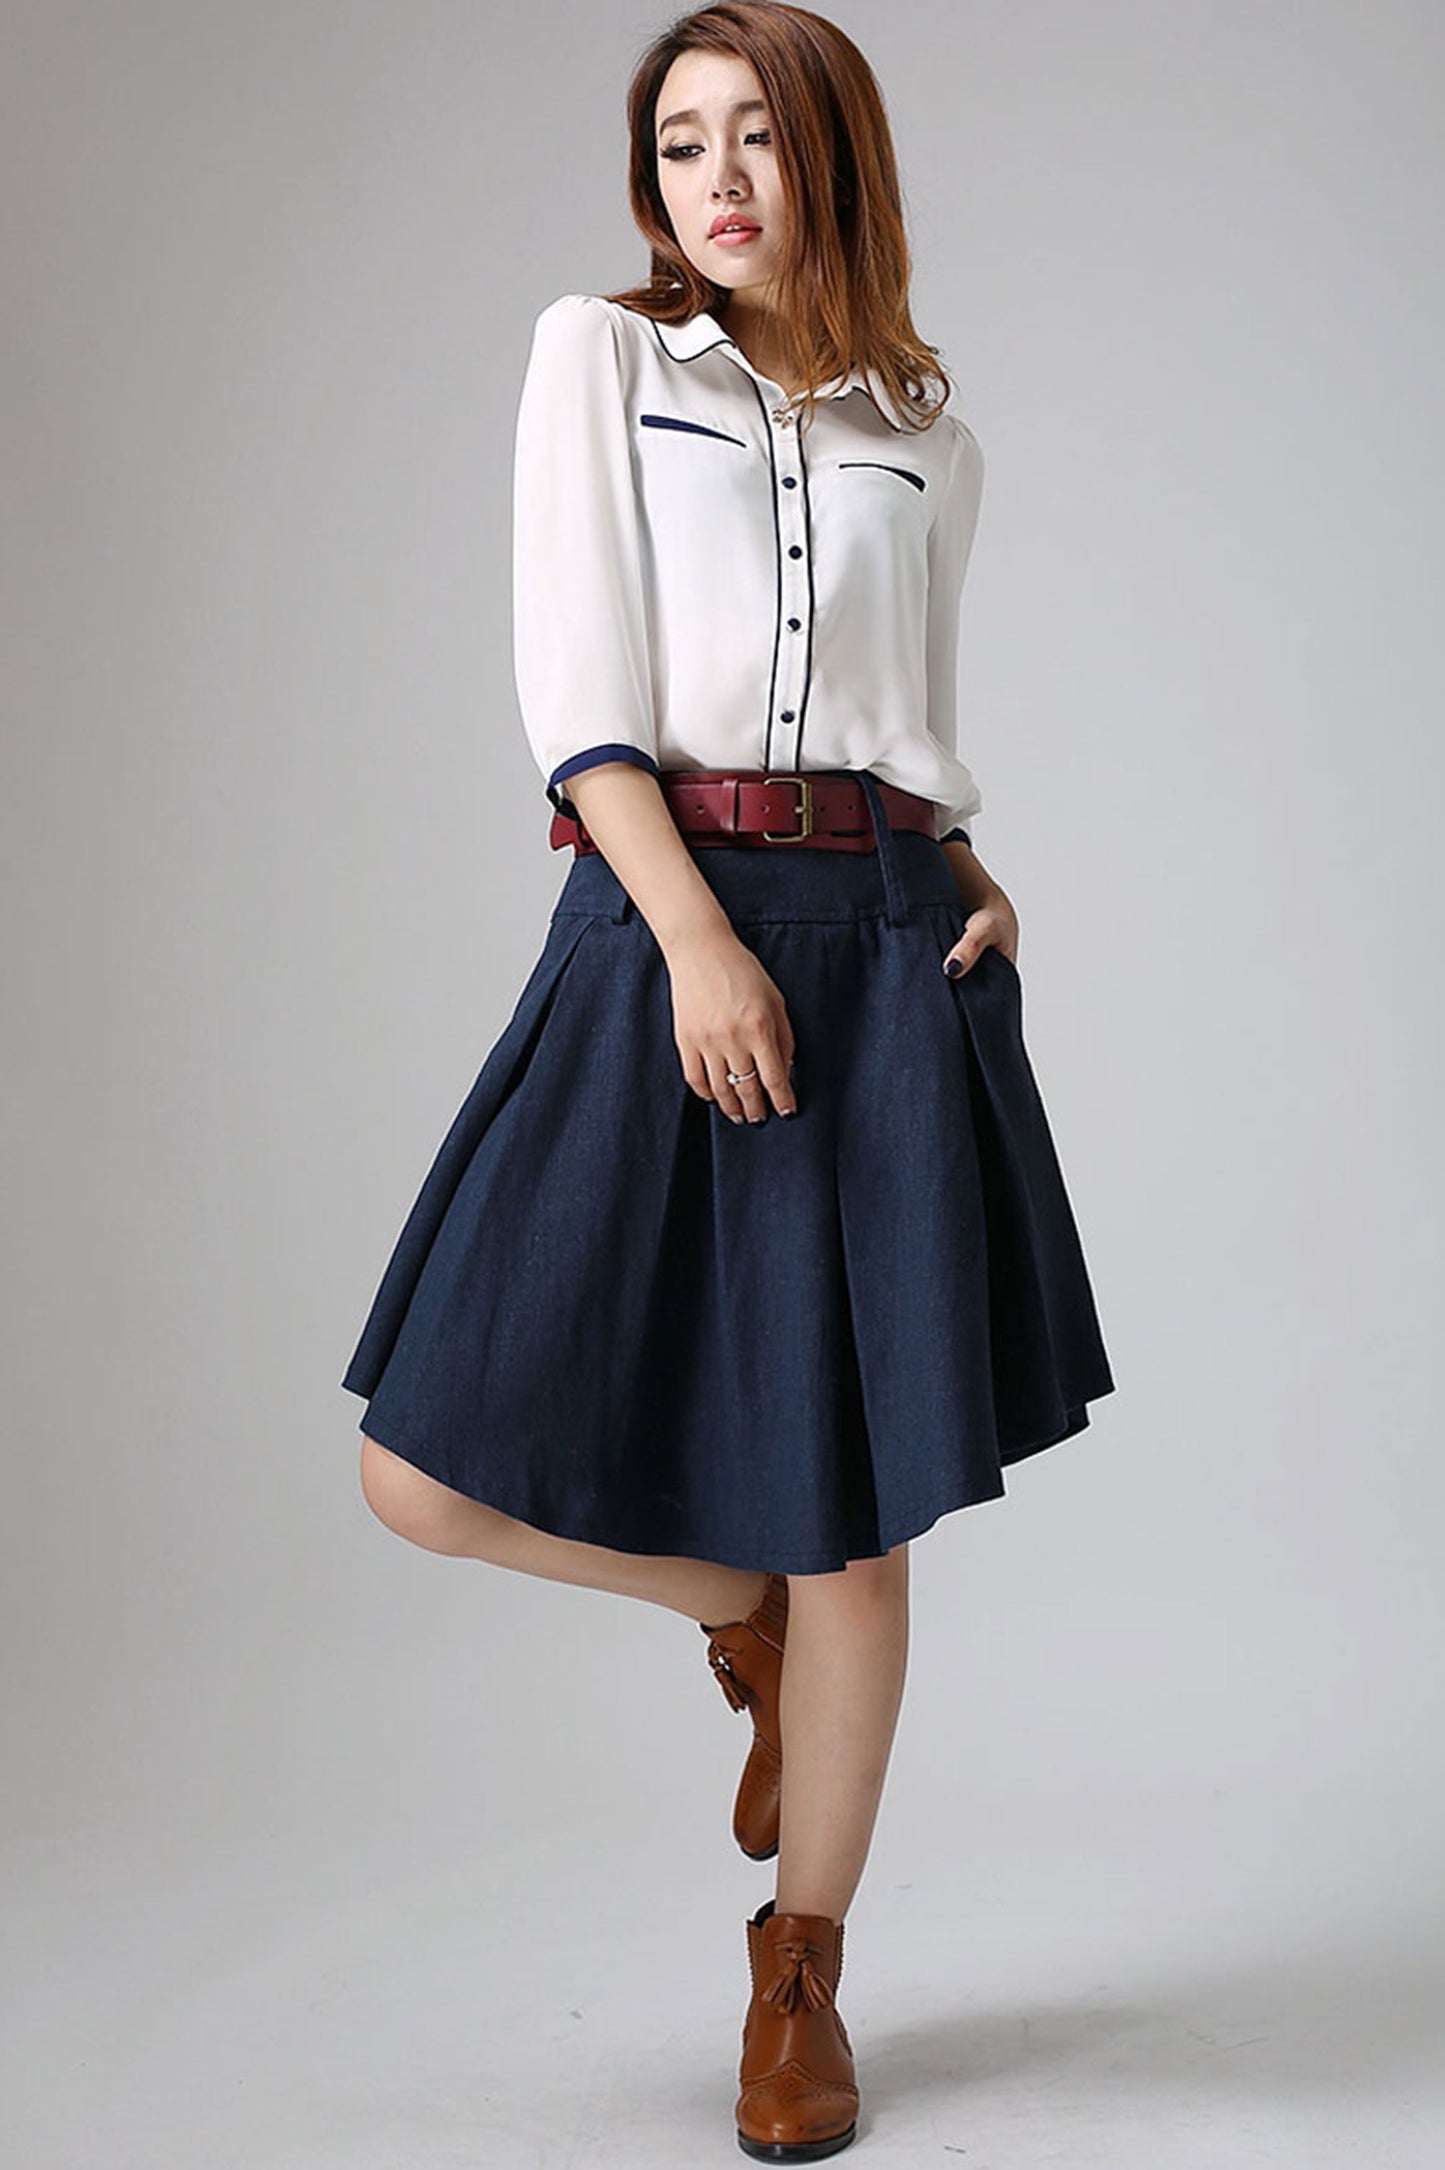 Blue skirt woman linen skirt midi skirt customa made pleated skirt 0906#